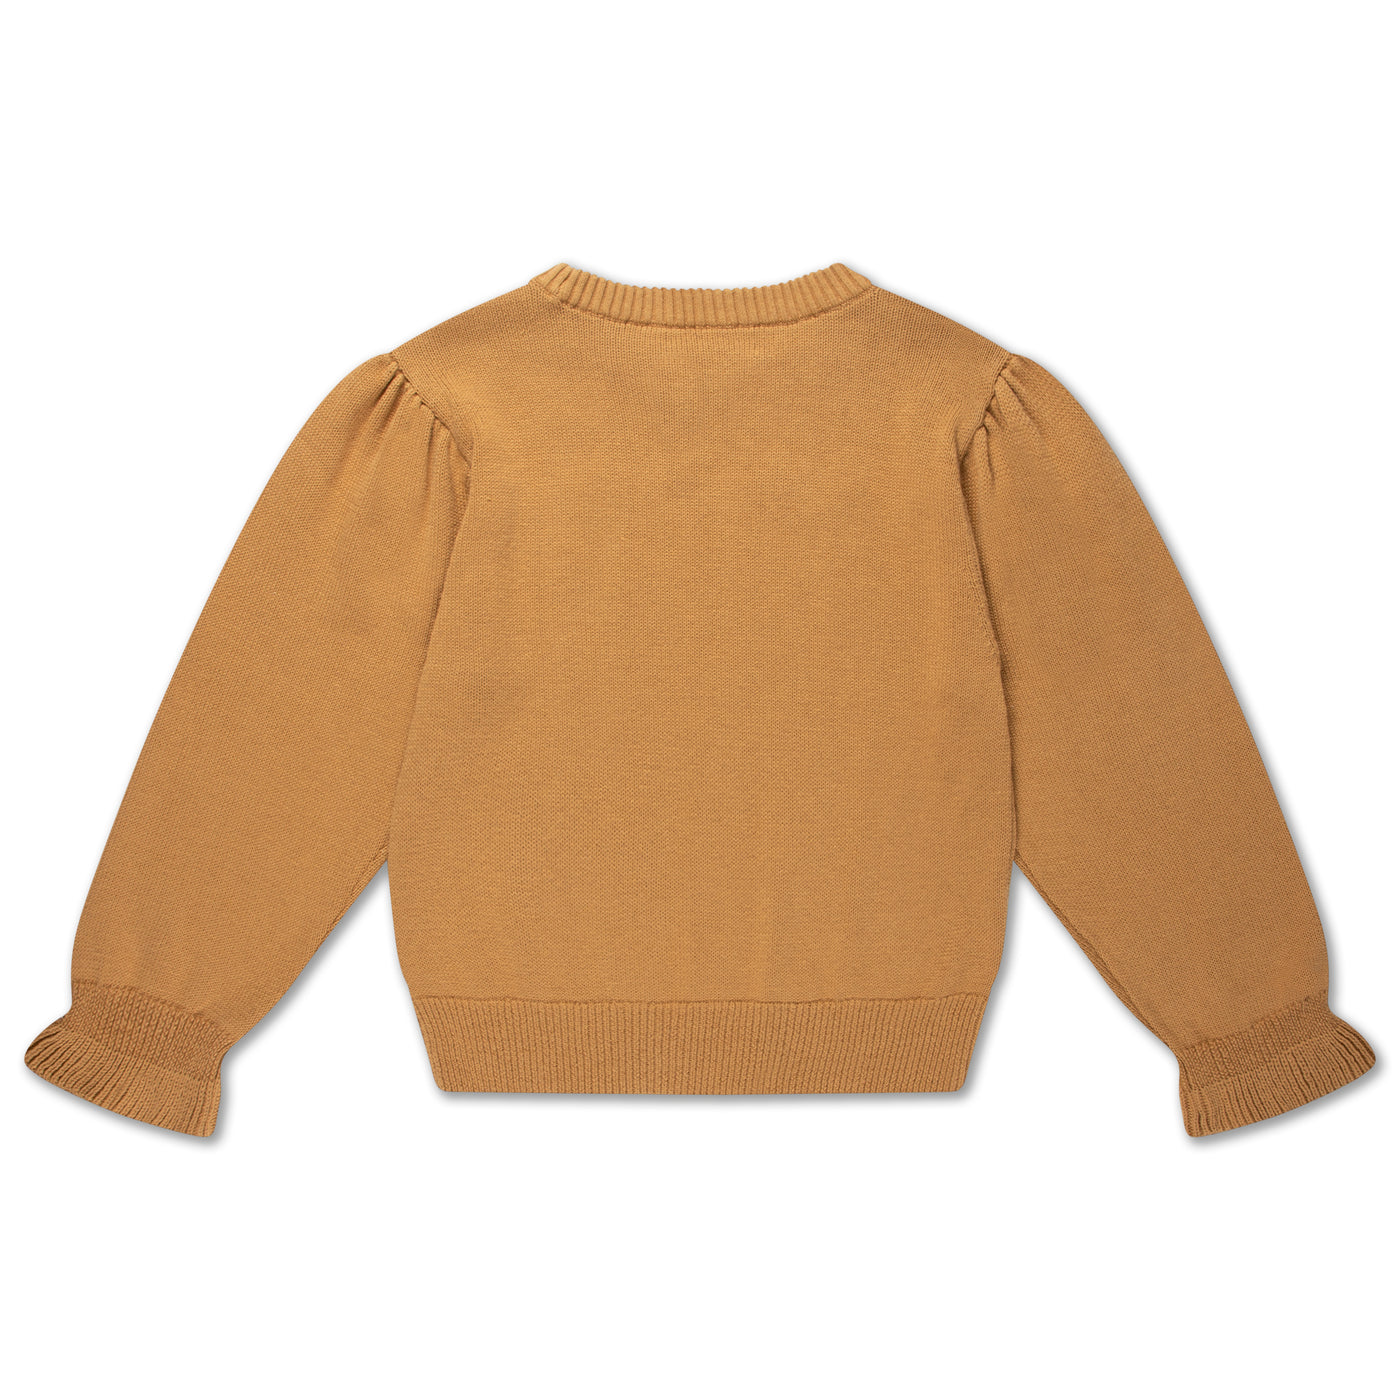 knit ruffle sweater - powder